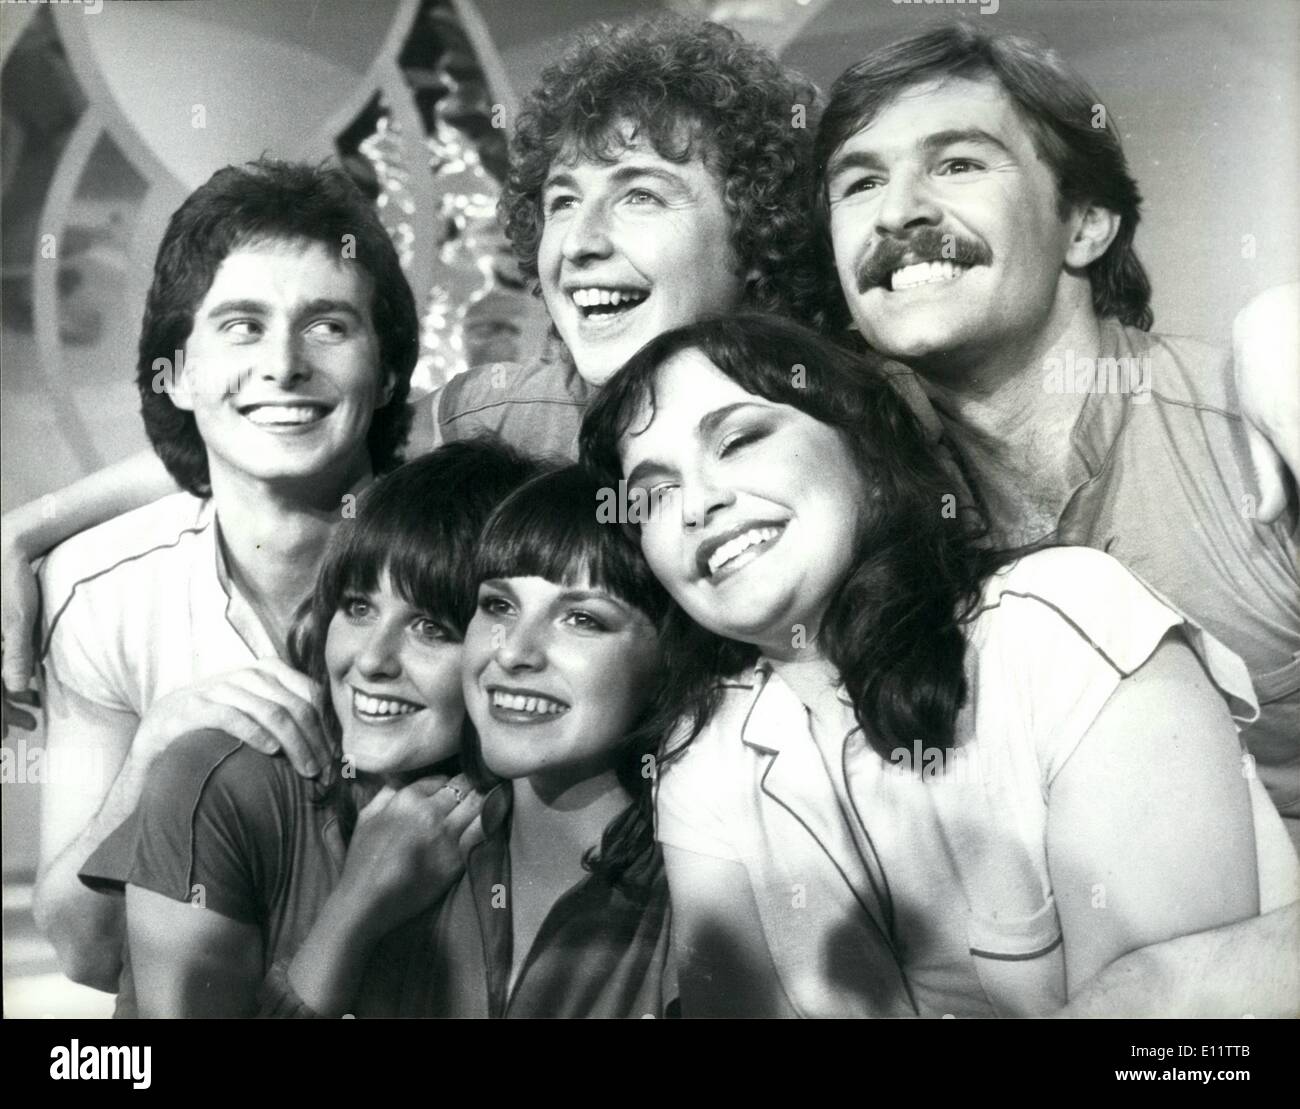 27 mars 1980 - 27 mars 1980 l'amour suffisant pour deux pour représenter la Grande-Bretagne dans Concours Eurovision de la chanson à la Haye. L'amour pour deux a été le gagnant de la douze Ã¢â'¬ËoeA chanson pour l'Europe" concours tenu à la BBC Television Theatre, à Londres la nuit dernière. Le groupe qui a chanté la chanson sont appelés Prima Donna, ils sont Danny Finn, un ancien membre de l'asile, Alan Coates, Lanos Aston, les Robbins sœurs, Kate et Jane, et Sally Triplett, et ils représenteront la France au Concours Eurovision de la chanson en Hollande le 19 avril Banque D'Images